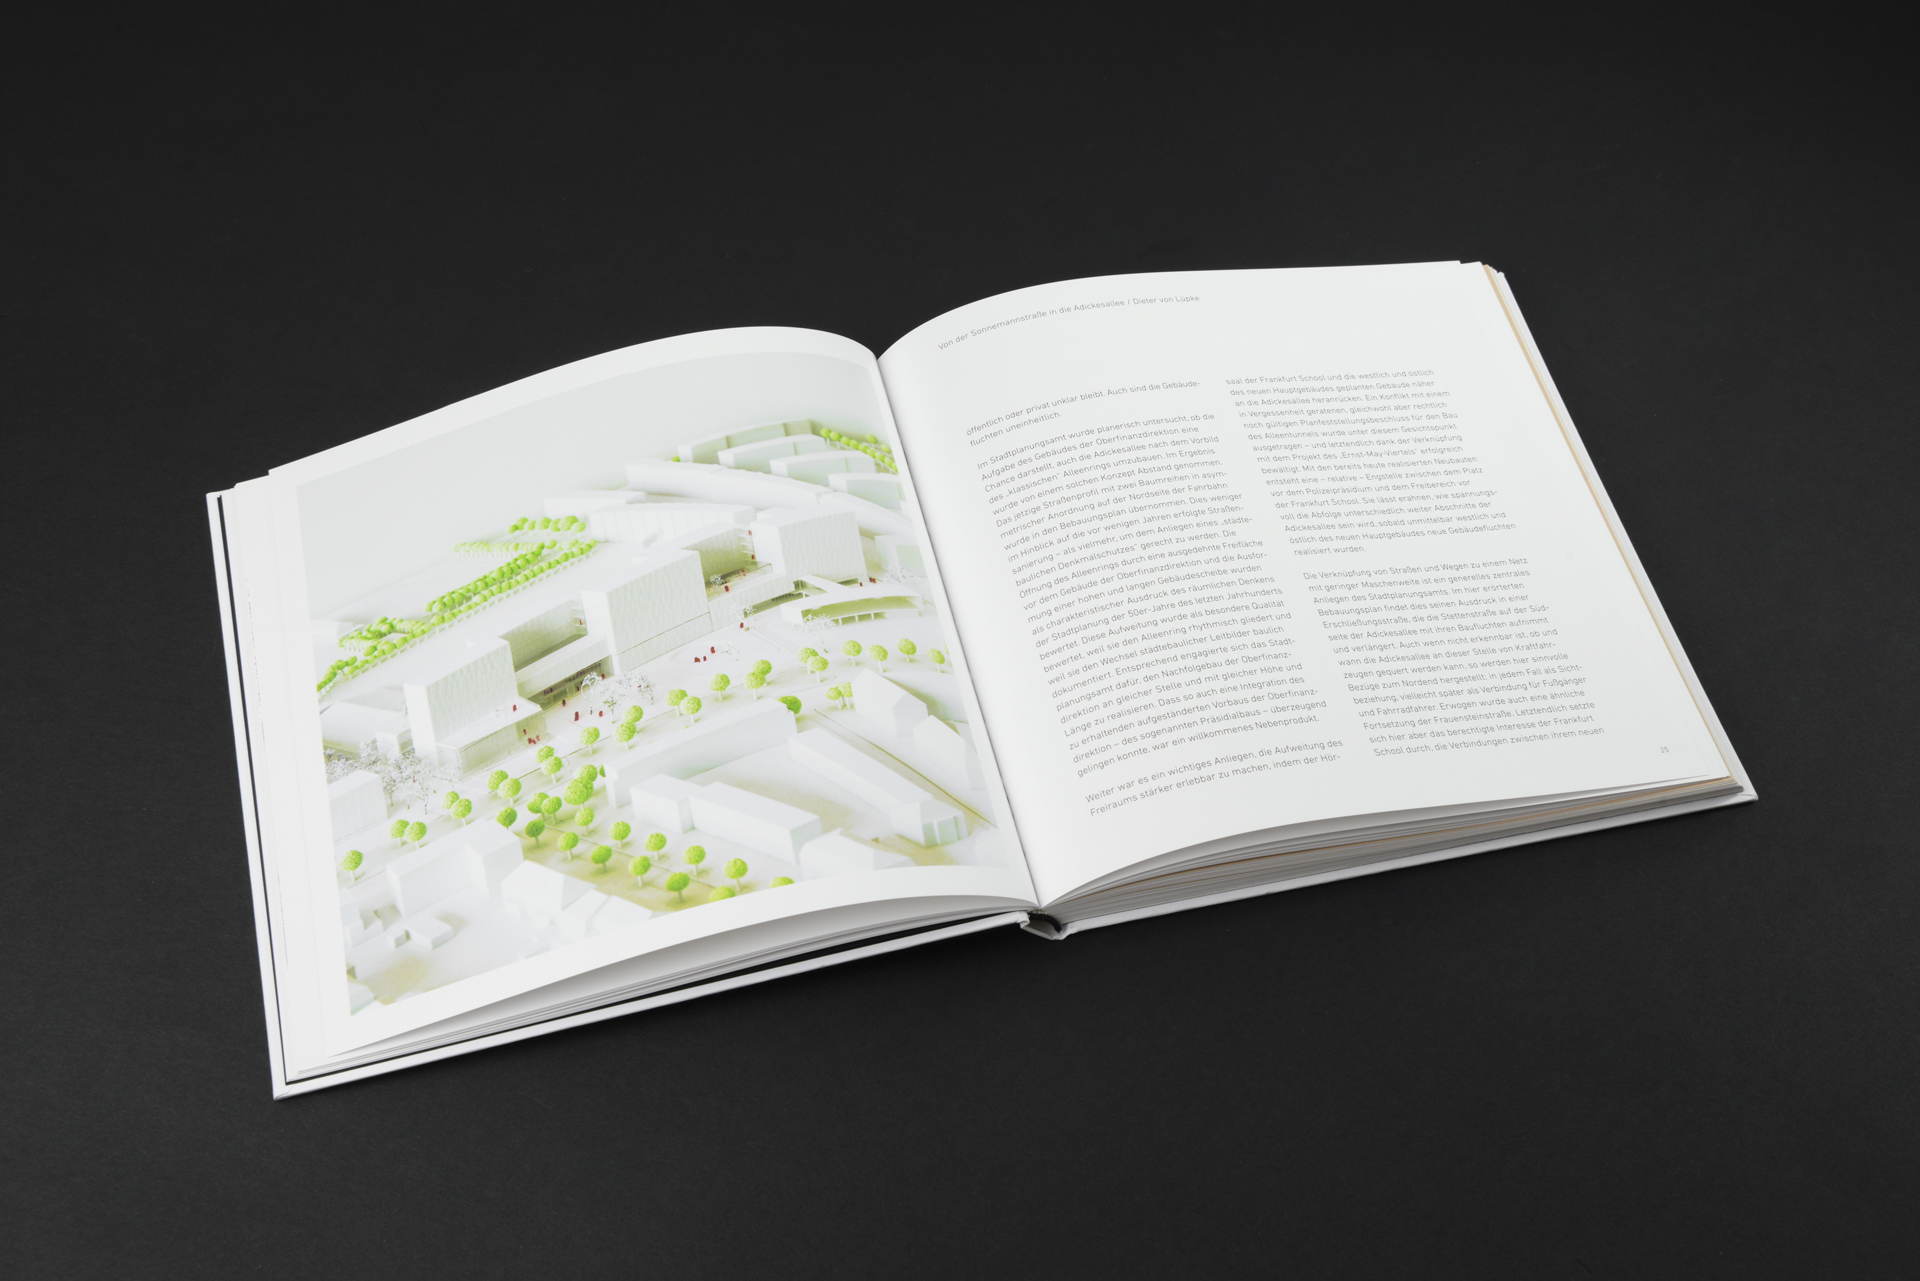 Buchprojekt (Editorial Design) - MOW Architekten und die Frankfurt School